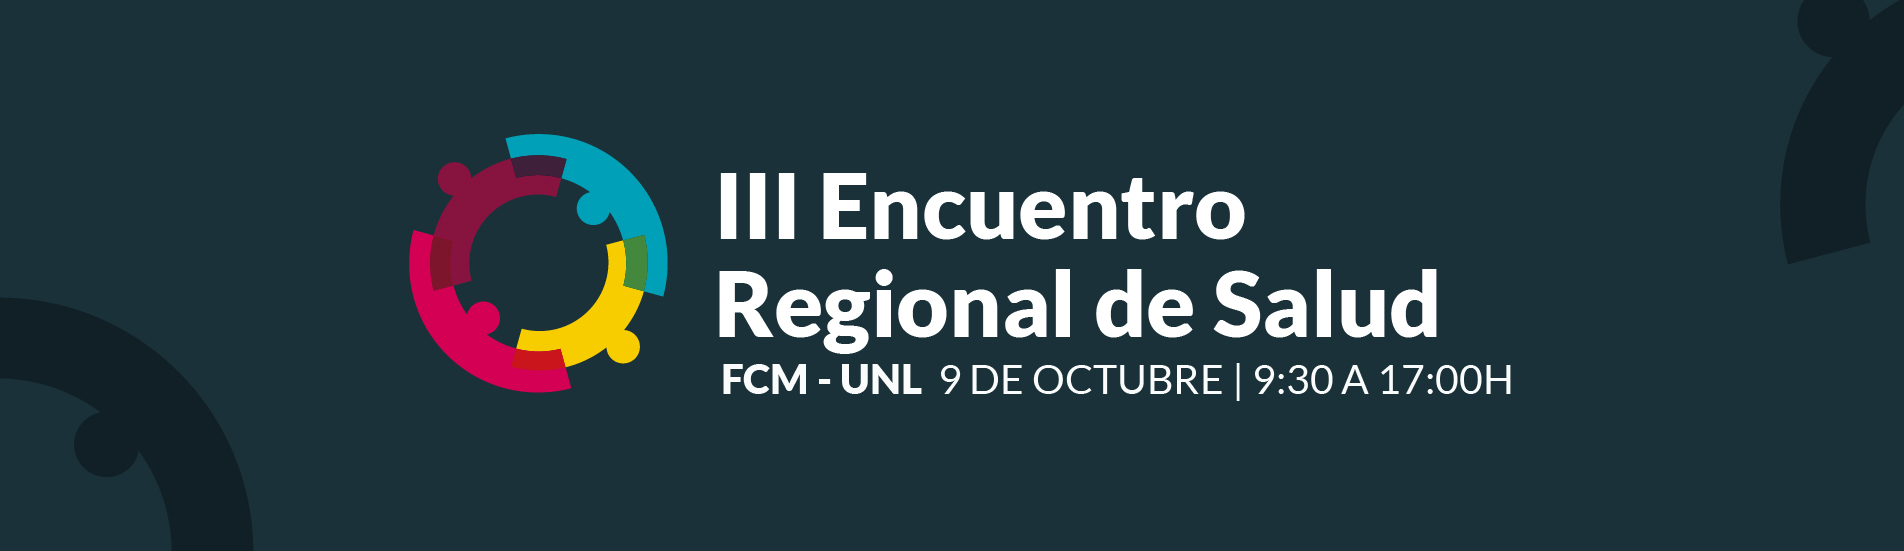 banner-encuentro-regional